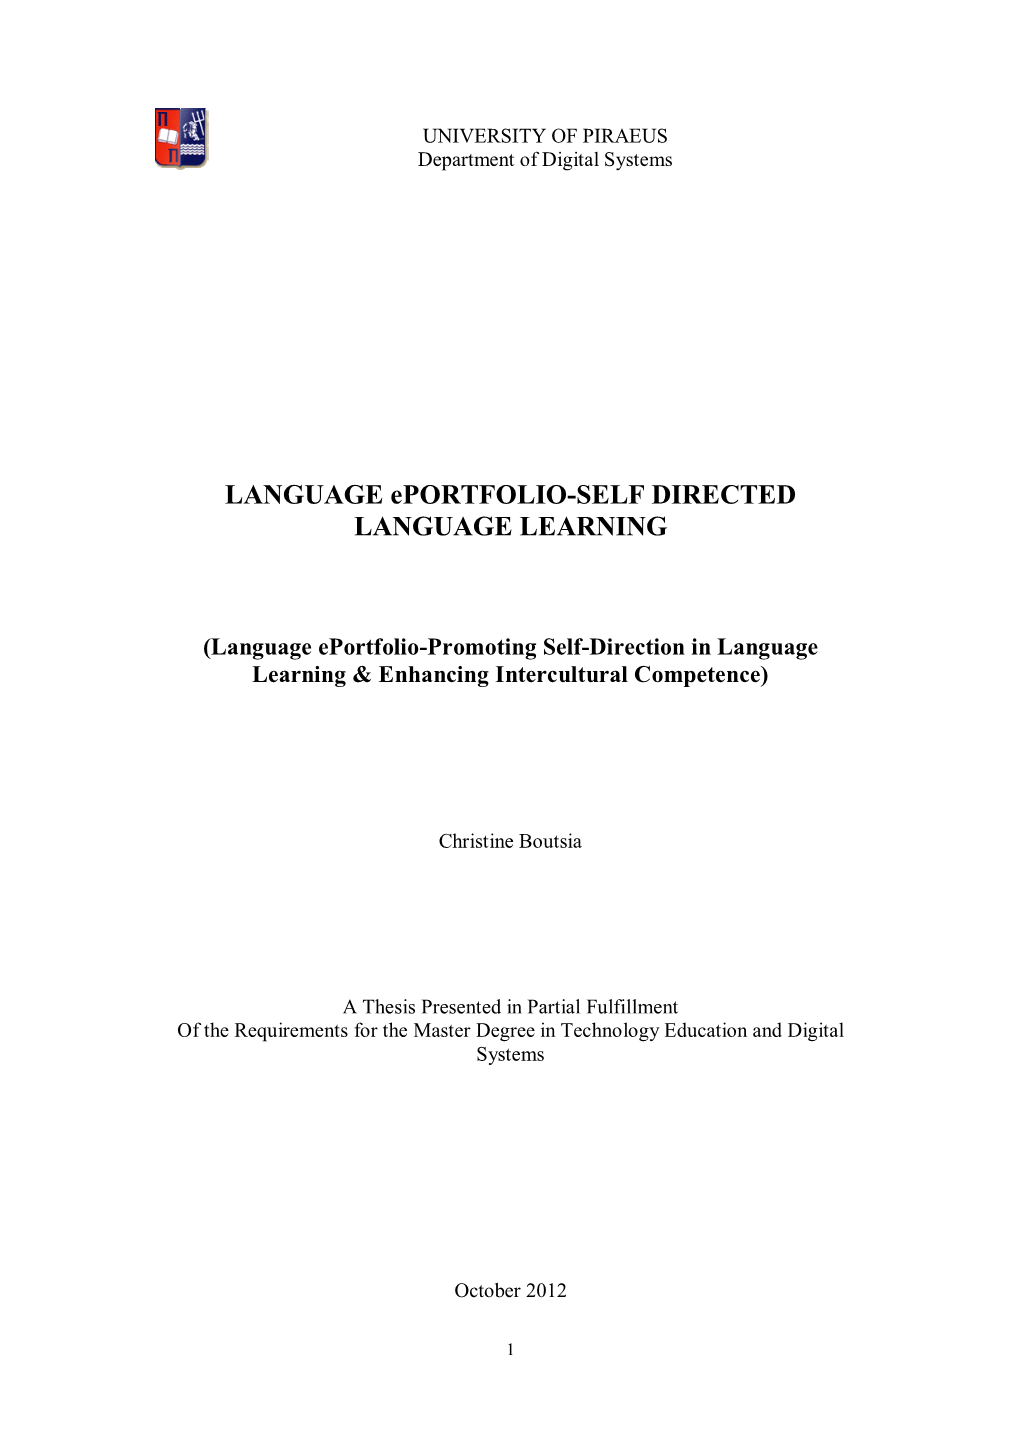 LANGUAGE Eportfolio-SELF DIRECTED LANGUAGE LEARNING